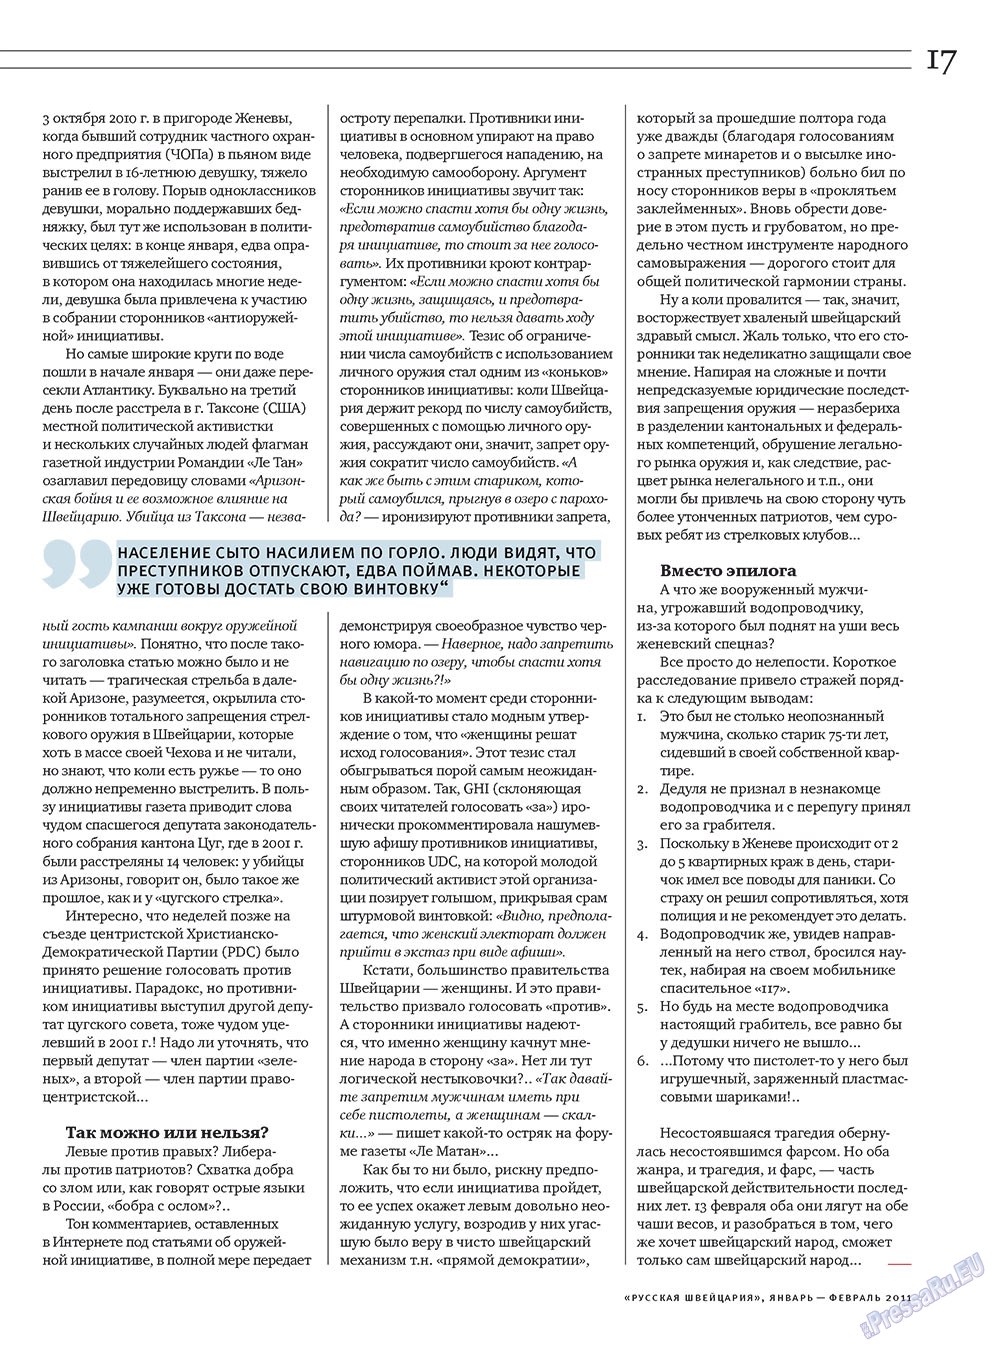 Русская Швейцария (журнал). 2011 год, номер 1, стр. 17